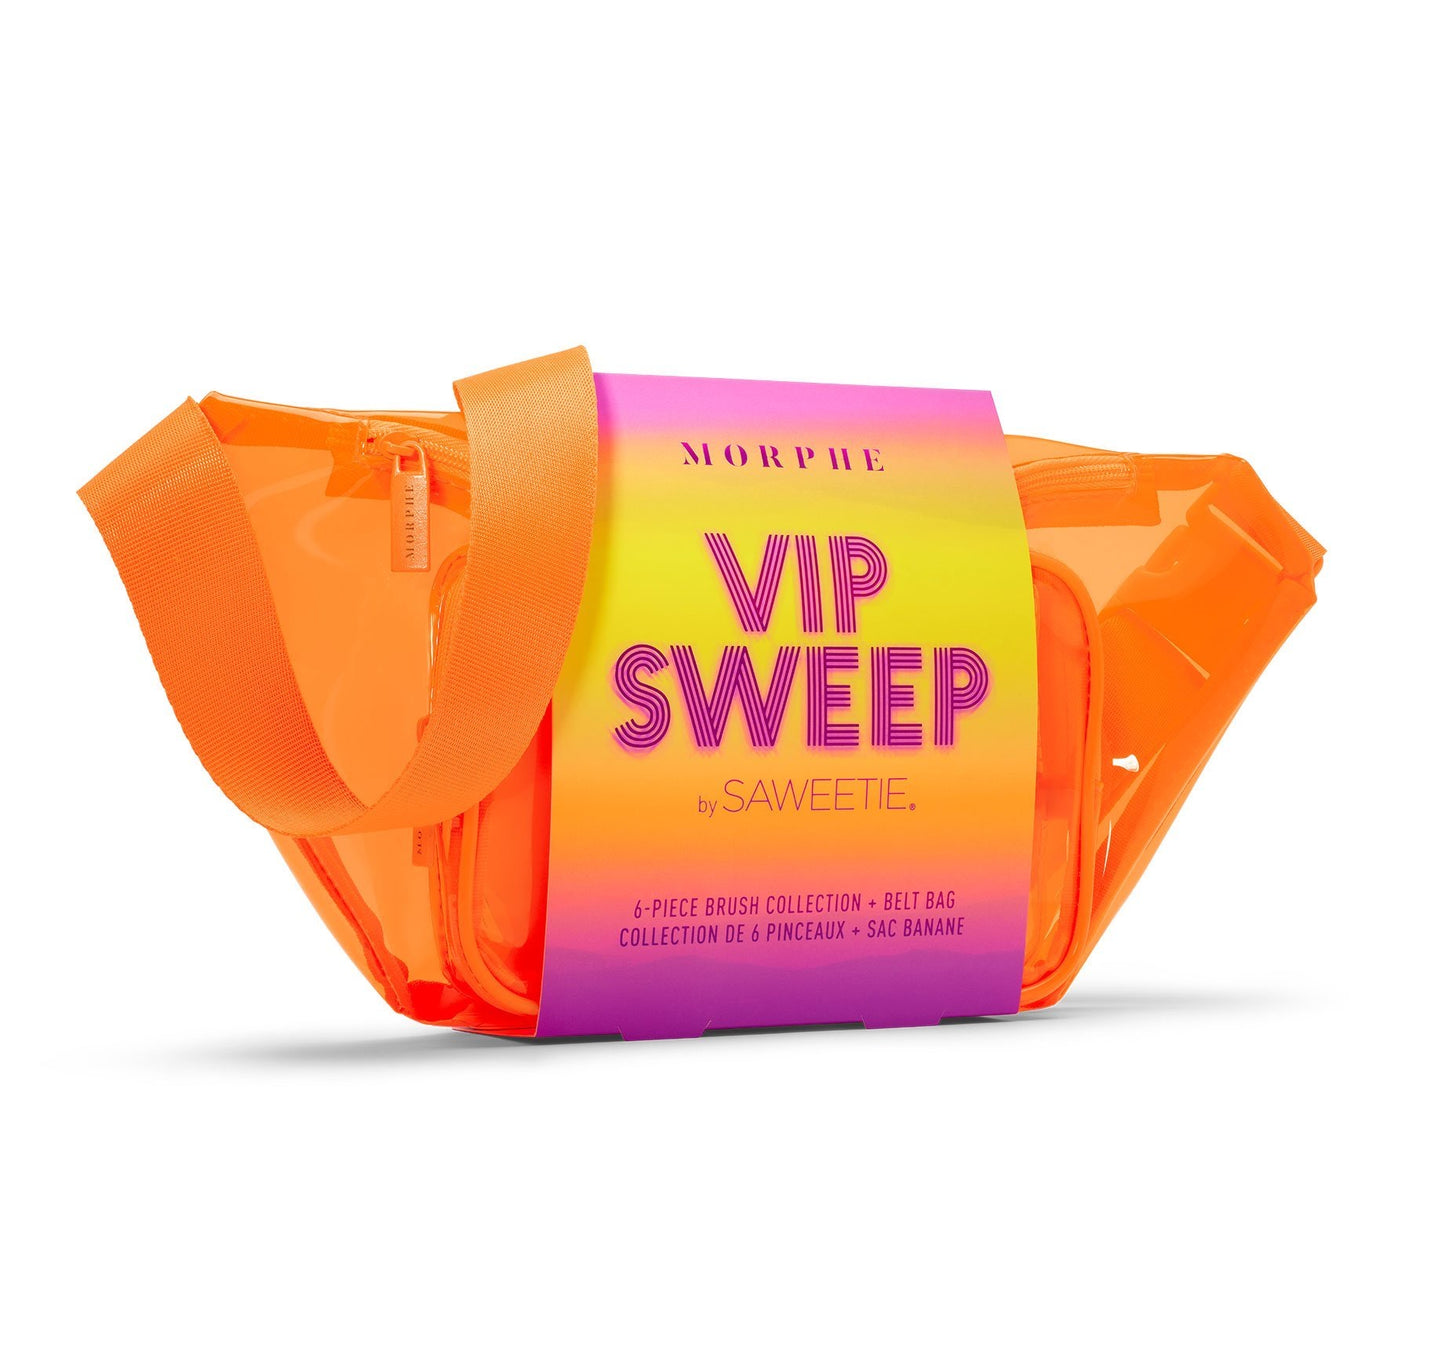 VIP Sweep by Saweetie Morphe